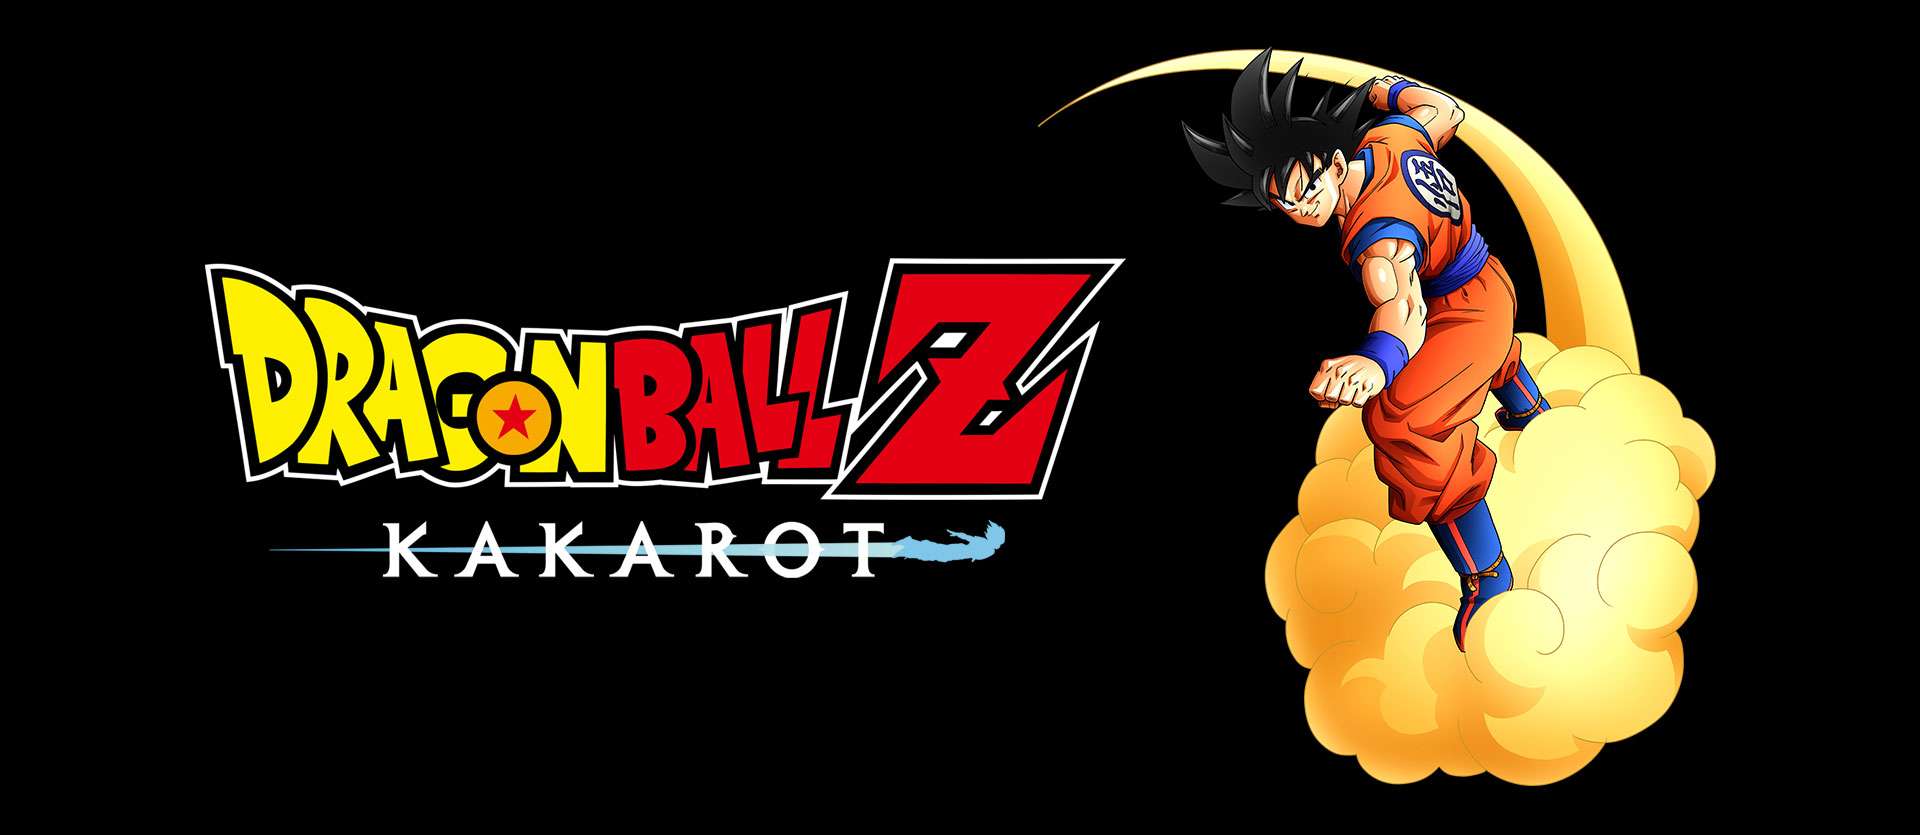 Dragon Ball Z: Kakarot incluirá en su modo historia hasta el arco de Majin Buu